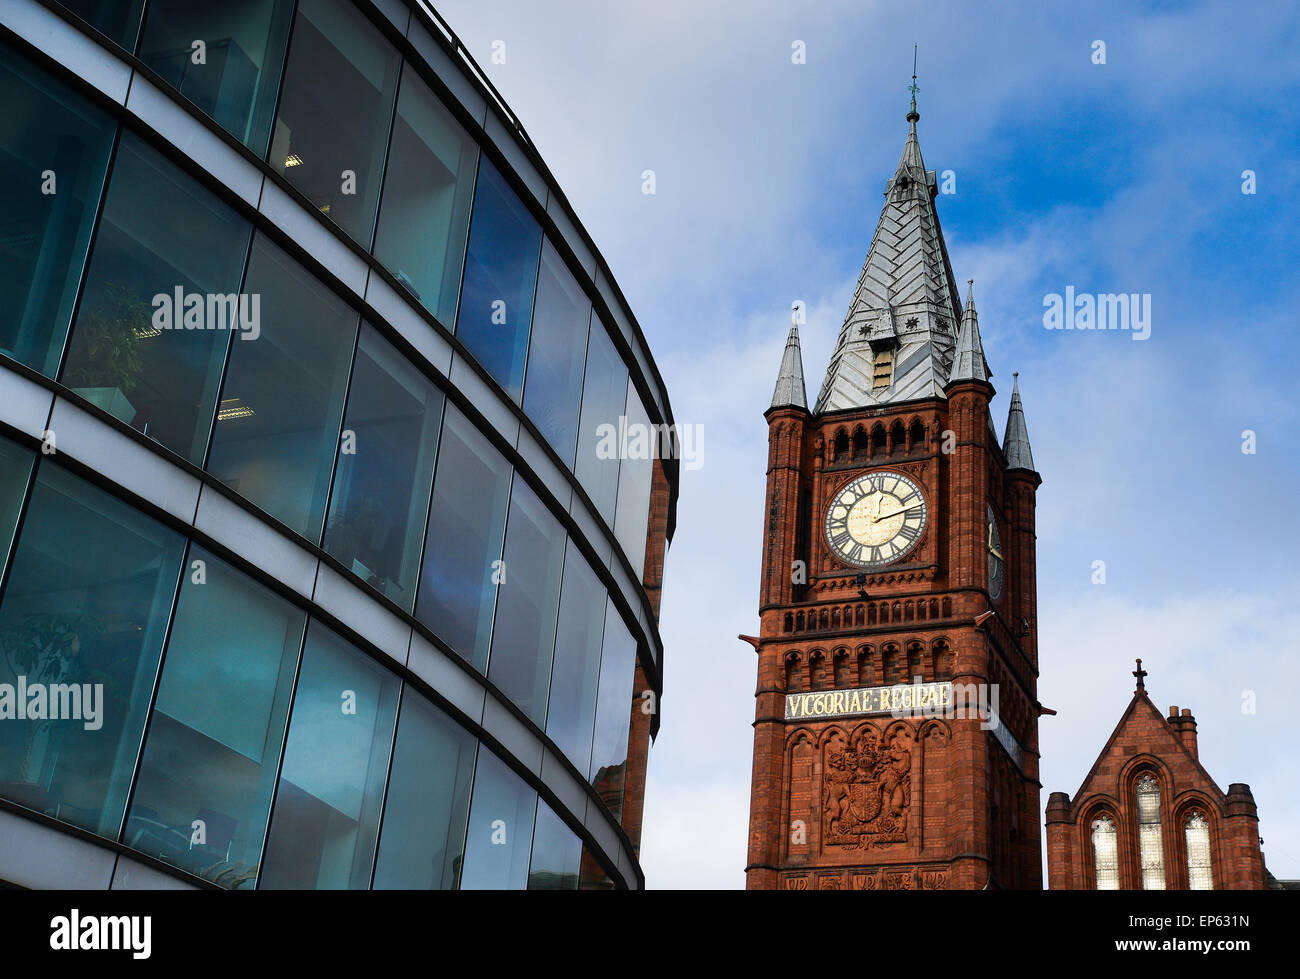 Clocktower von The Victoria Galerie & Museum Liverpool und der modernen Student Administration Centre der University of Liverpool Stockfoto